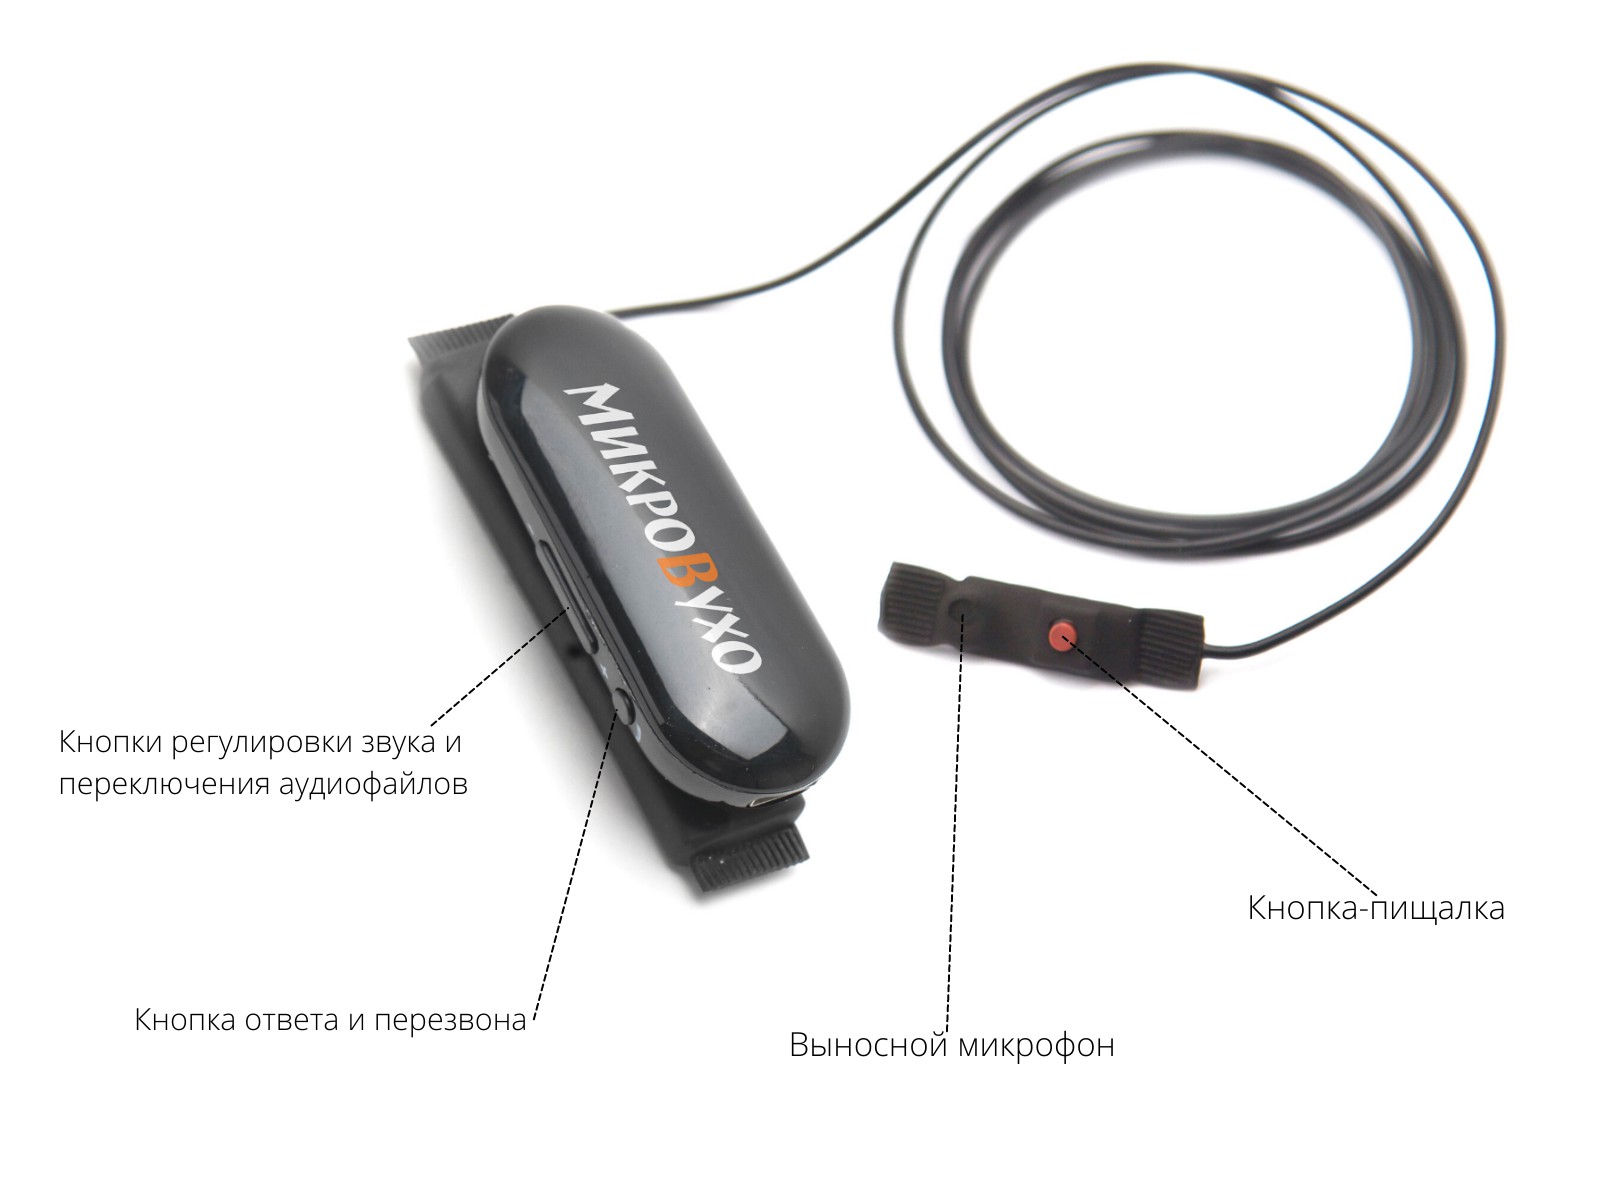 Гарнитура Bluetooth Box Basic Plus с магнитными микронаушниками 2 мм 4